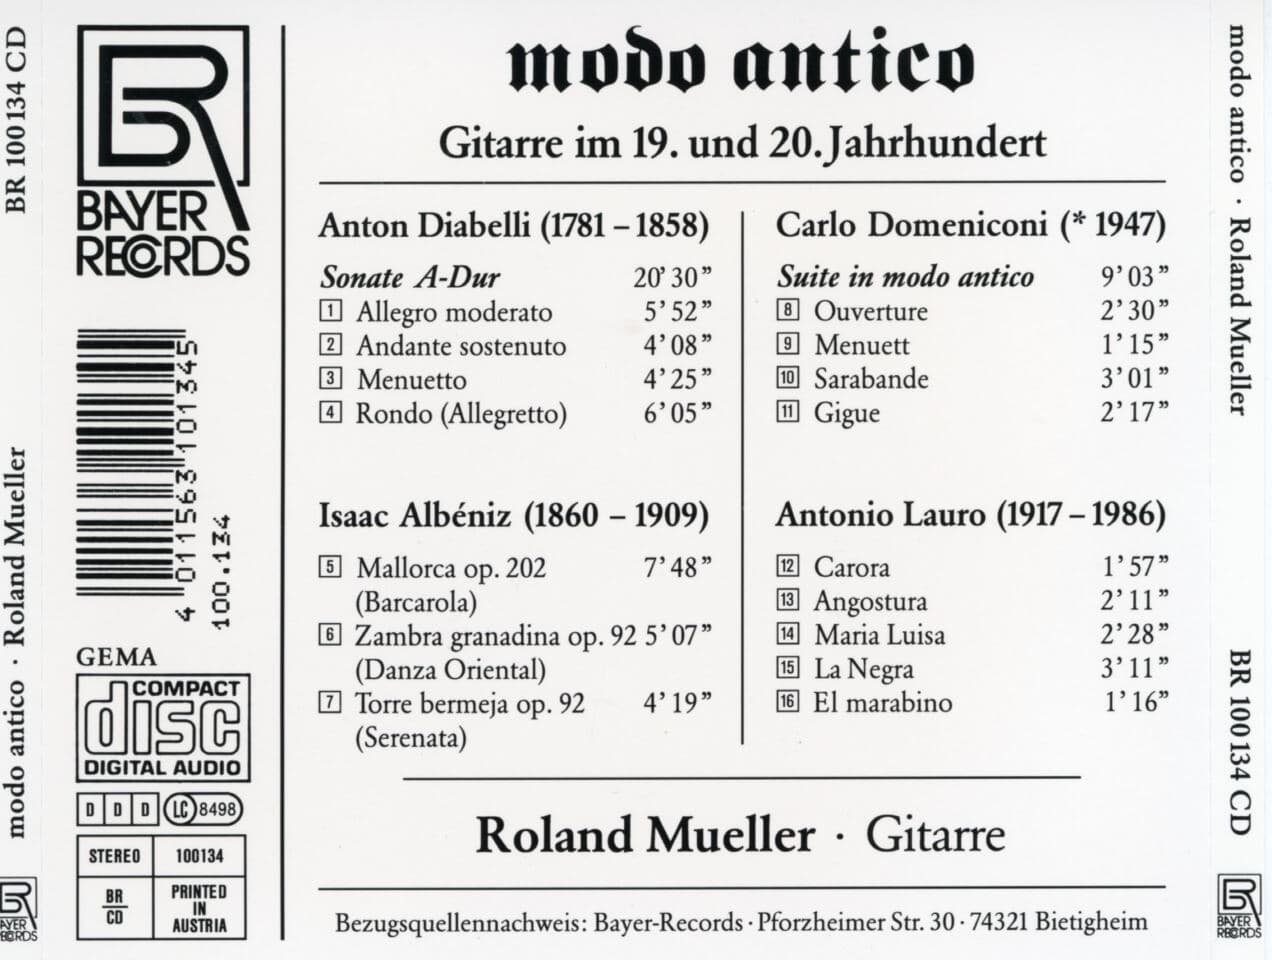 롤랜드 뮬러 - Roland Mueller - Modo Antico Gitarre Im 19. und 20. Jahrhundert [오스트리아발매]